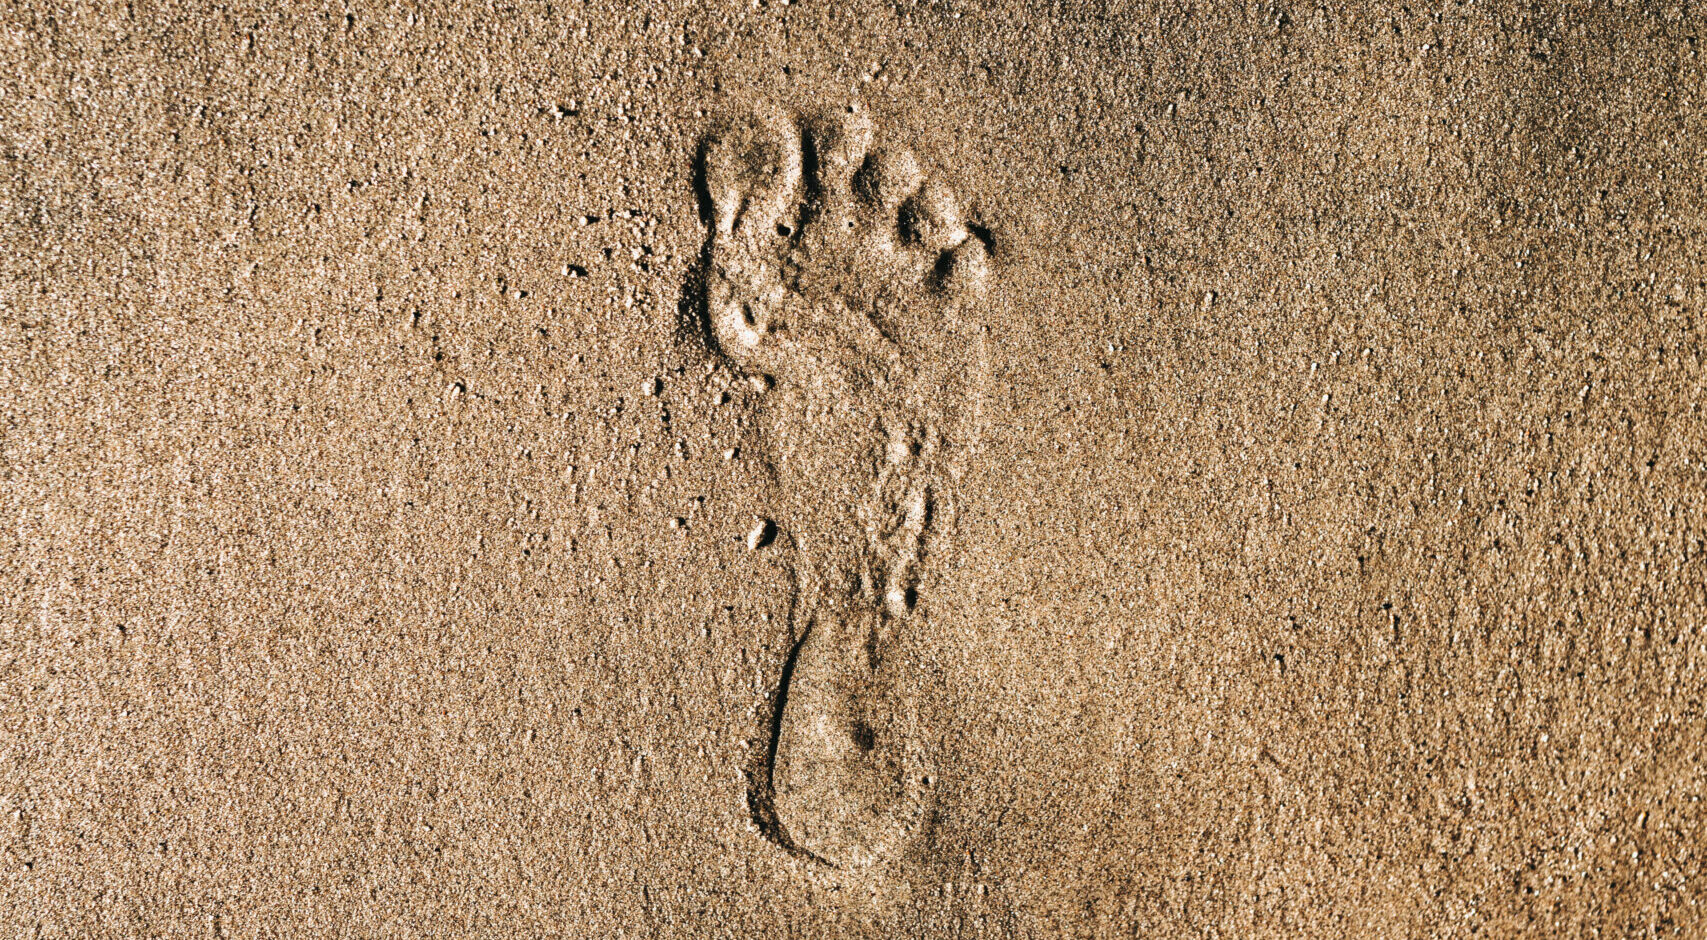 foot-print-beach